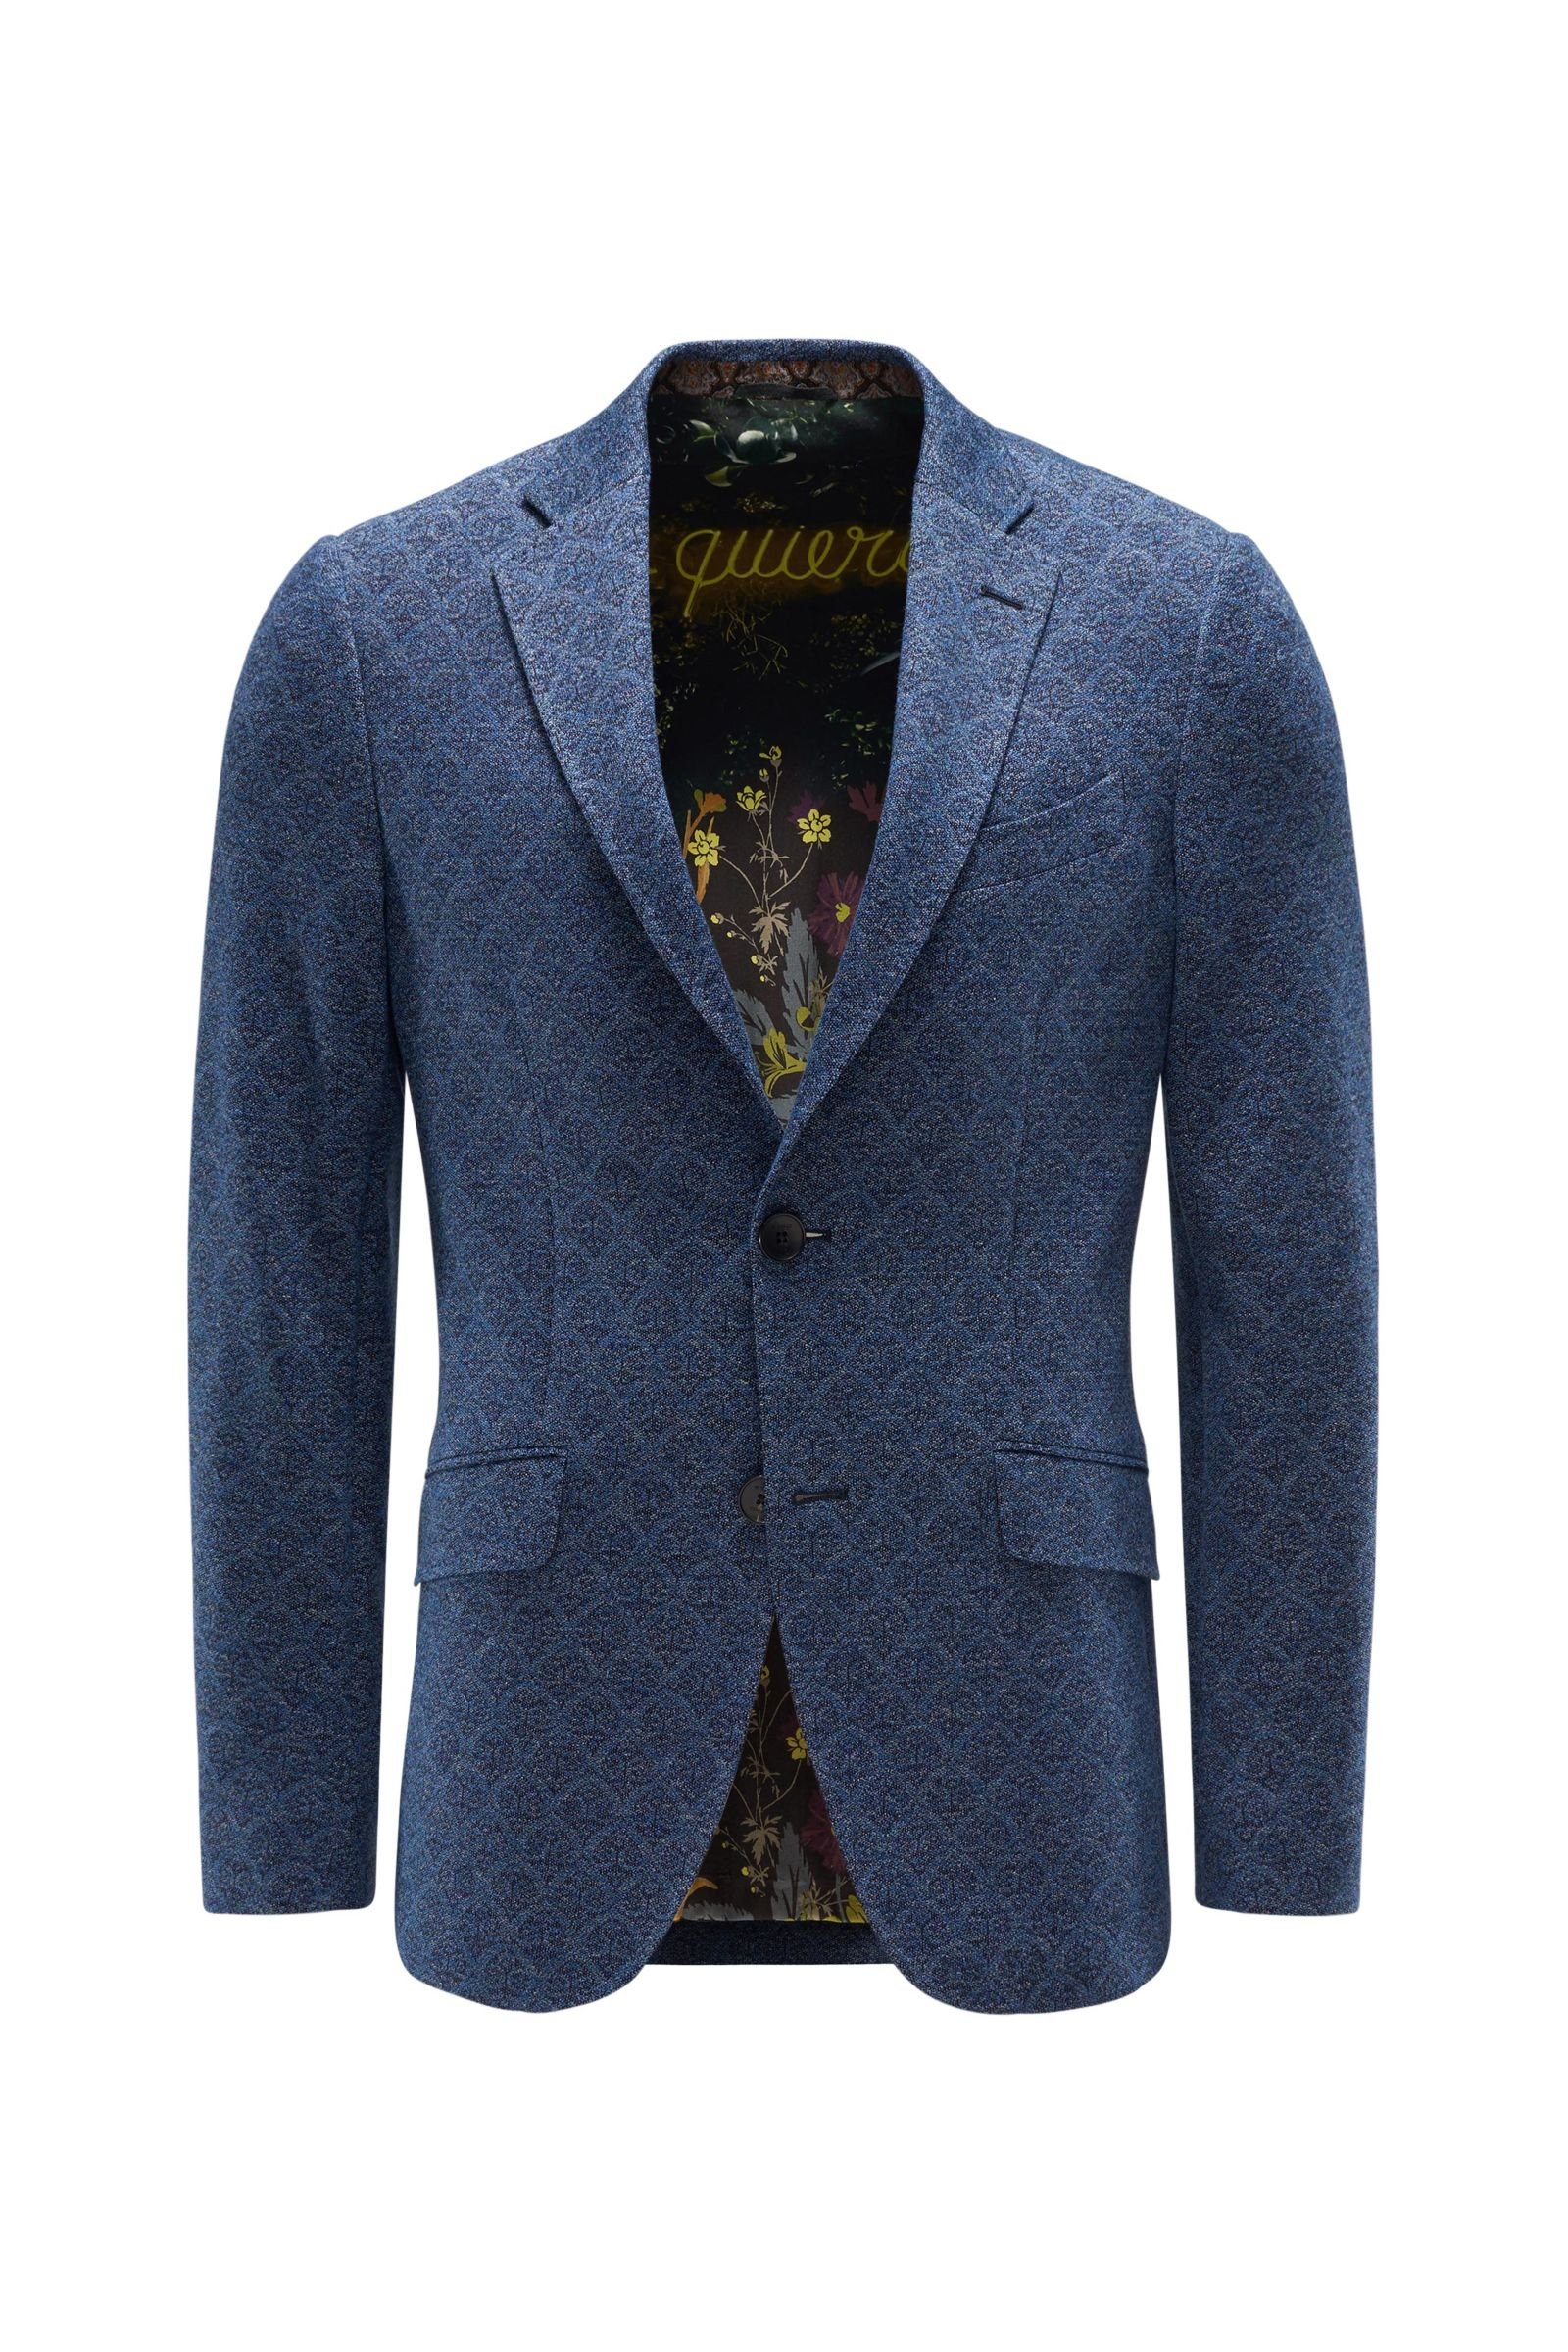 Jersey jacket grey-blue patterned